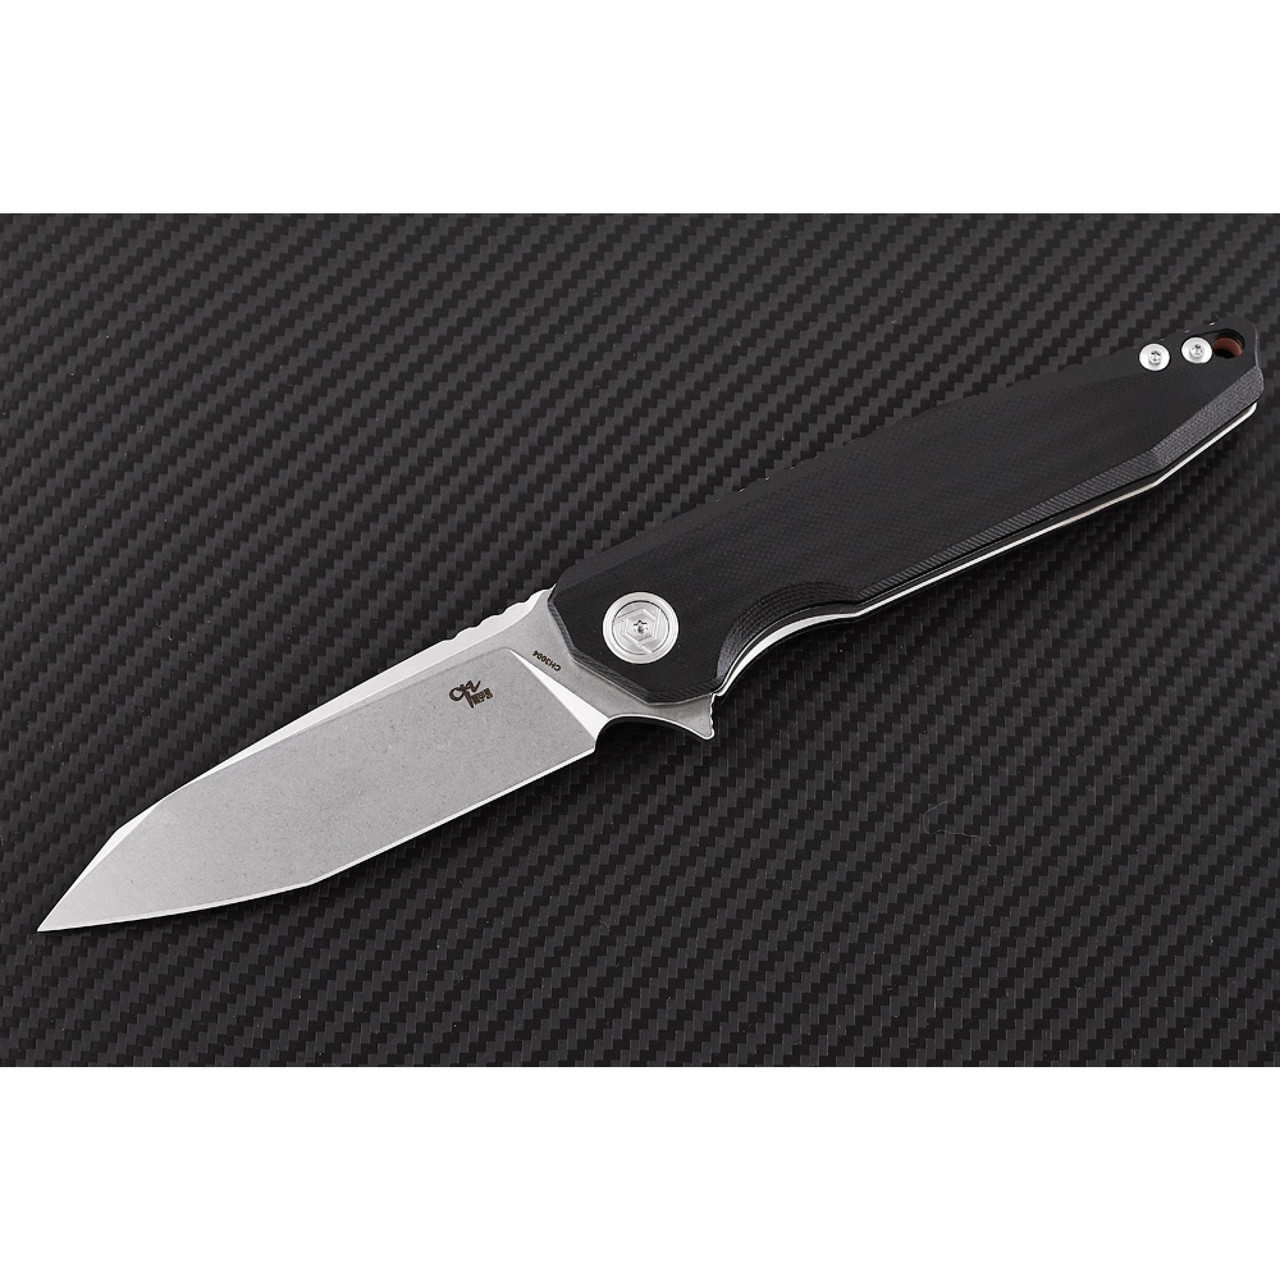 Складной нож – крепкий и надёжный EDC нож от CH Outdoor